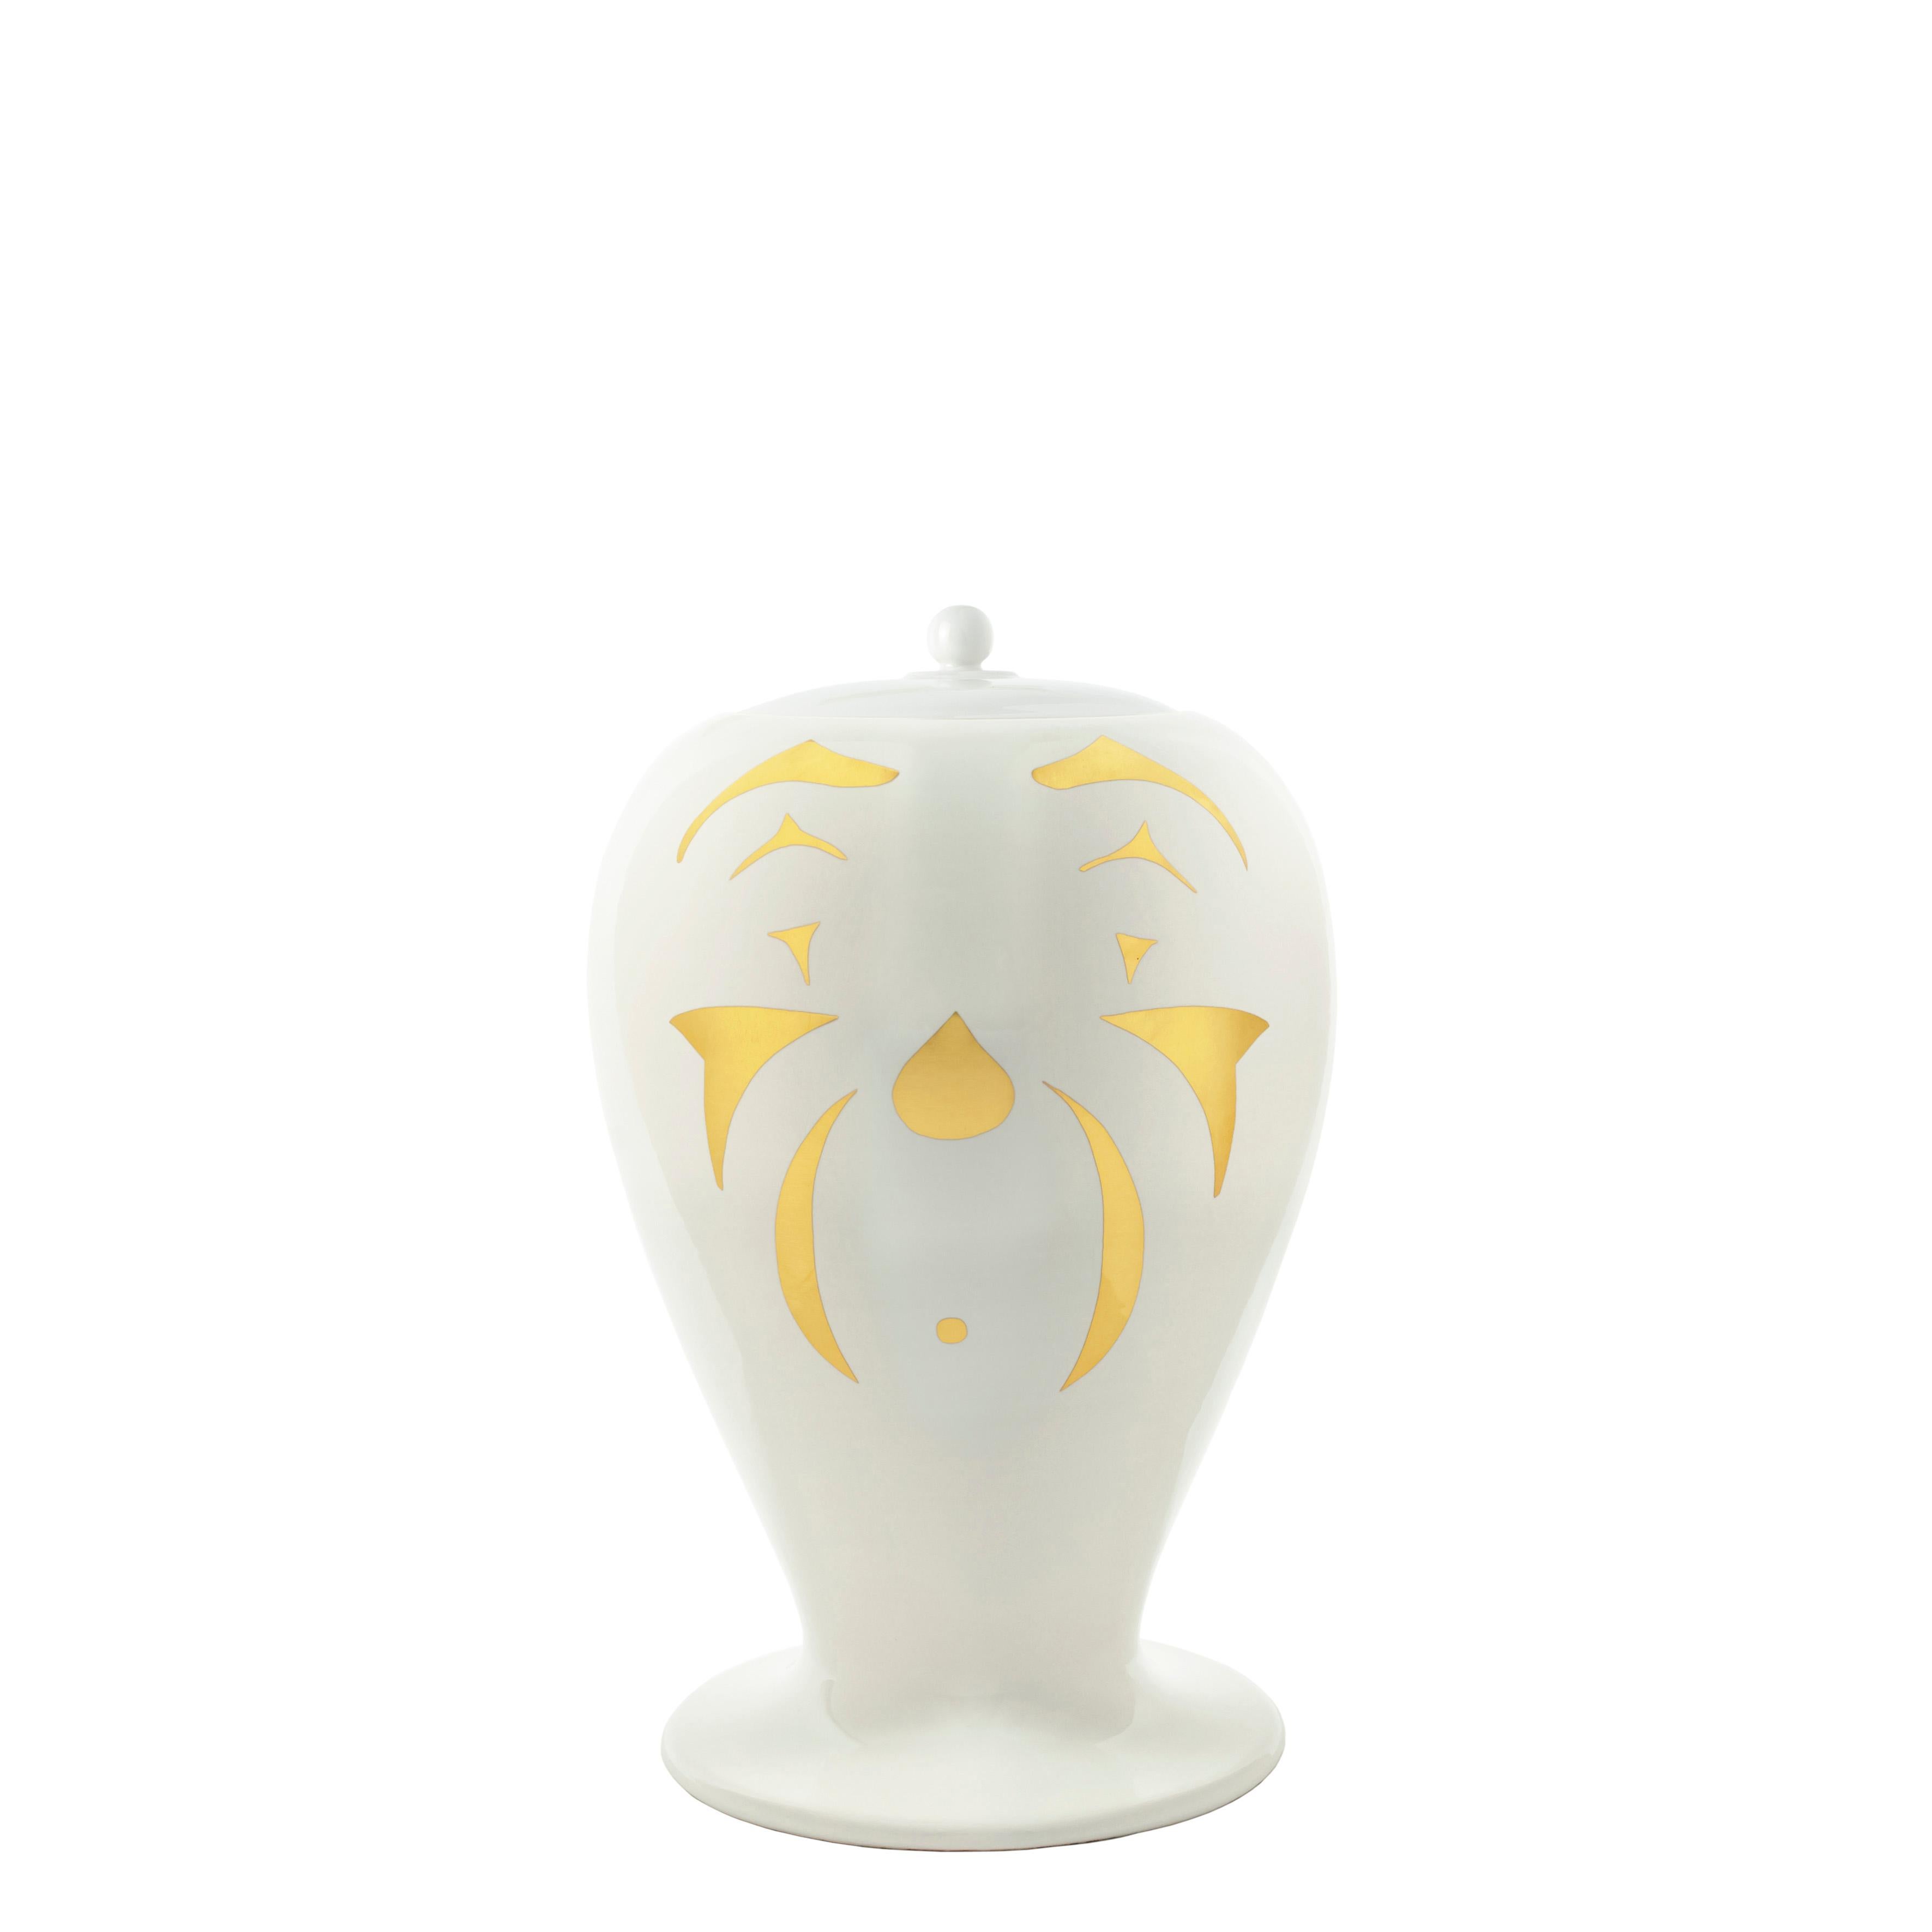 Ein weiterer Klassiker des Fornasetti-Katalogs: Die ungewöhnliche Form der Vase, gepaart mit der zeitlosen Schönheit von Lina Cavalieri, Piero Fornasettis ständiger Muse, macht sie zu einem der charakteristischsten und originellsten Stücke des